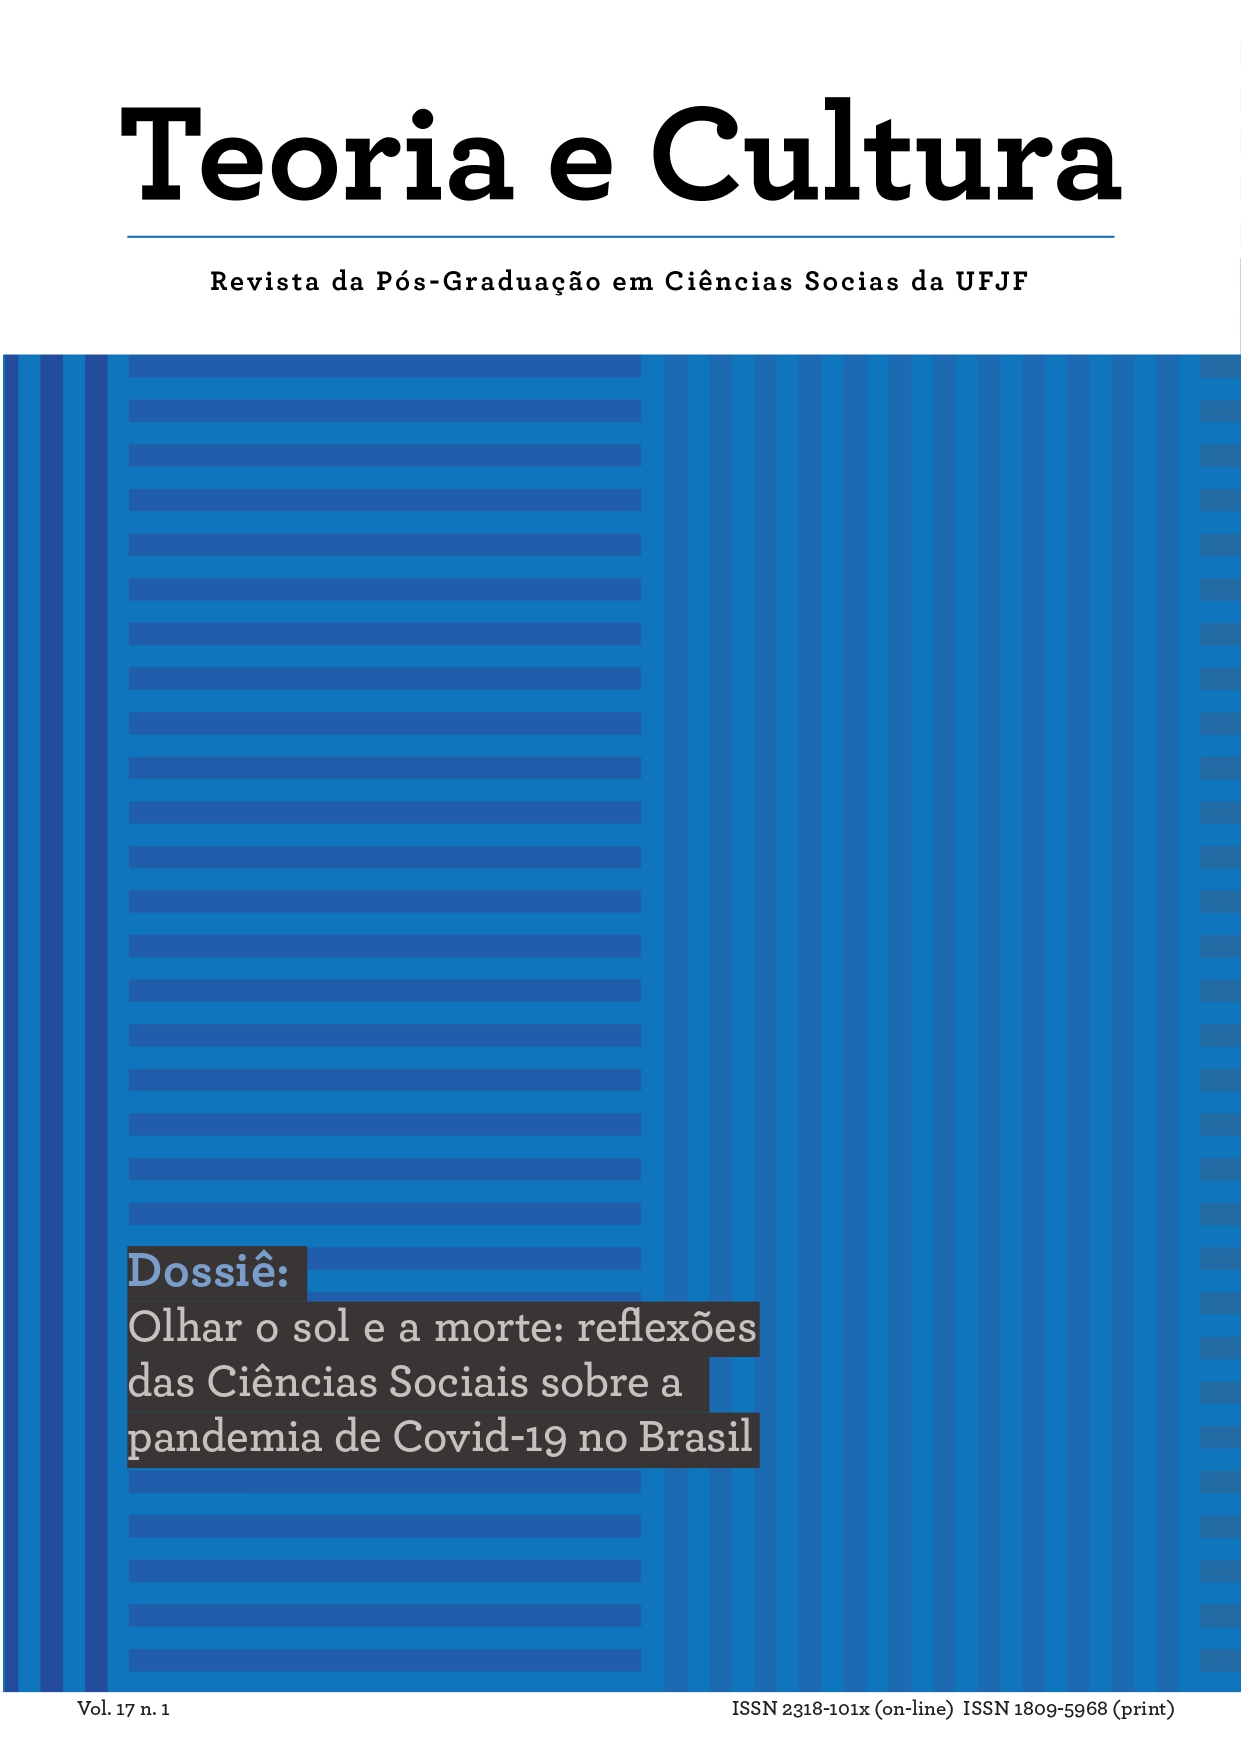 Edição número 1, Volume 17 da Revista Teoria e Cultura. Dossiê Olhar o sol e a morte: contribuições das Ciências Sociais sobre a pandemia de Covid-19 no Brasil.